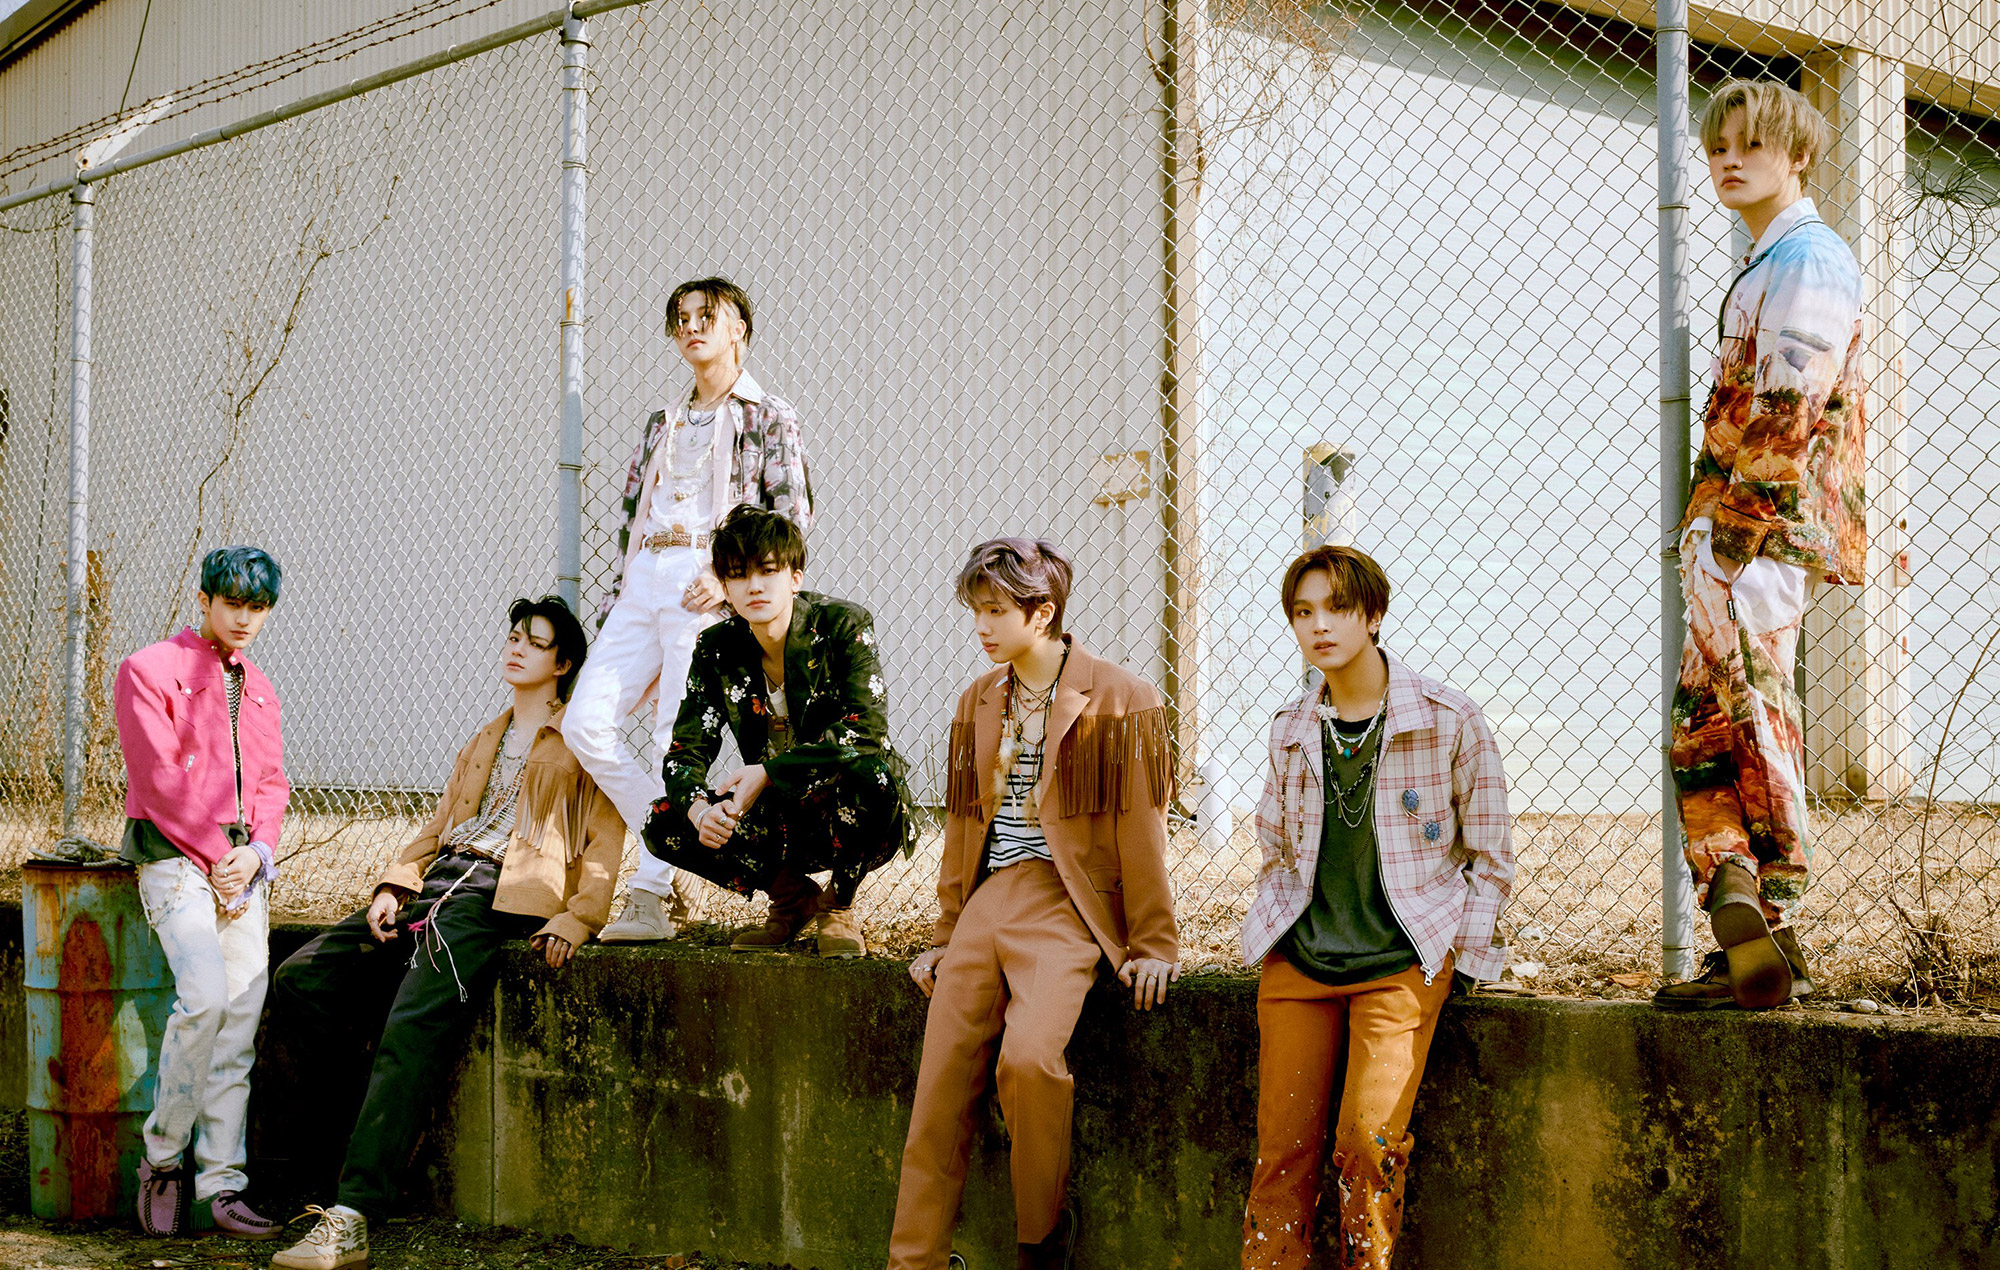 Chỉ mới 'comeback', NCT DREAM đã lập kỉ lục với lượng đặt album vượt mốc 1.71 triệu bản - ảnh 4